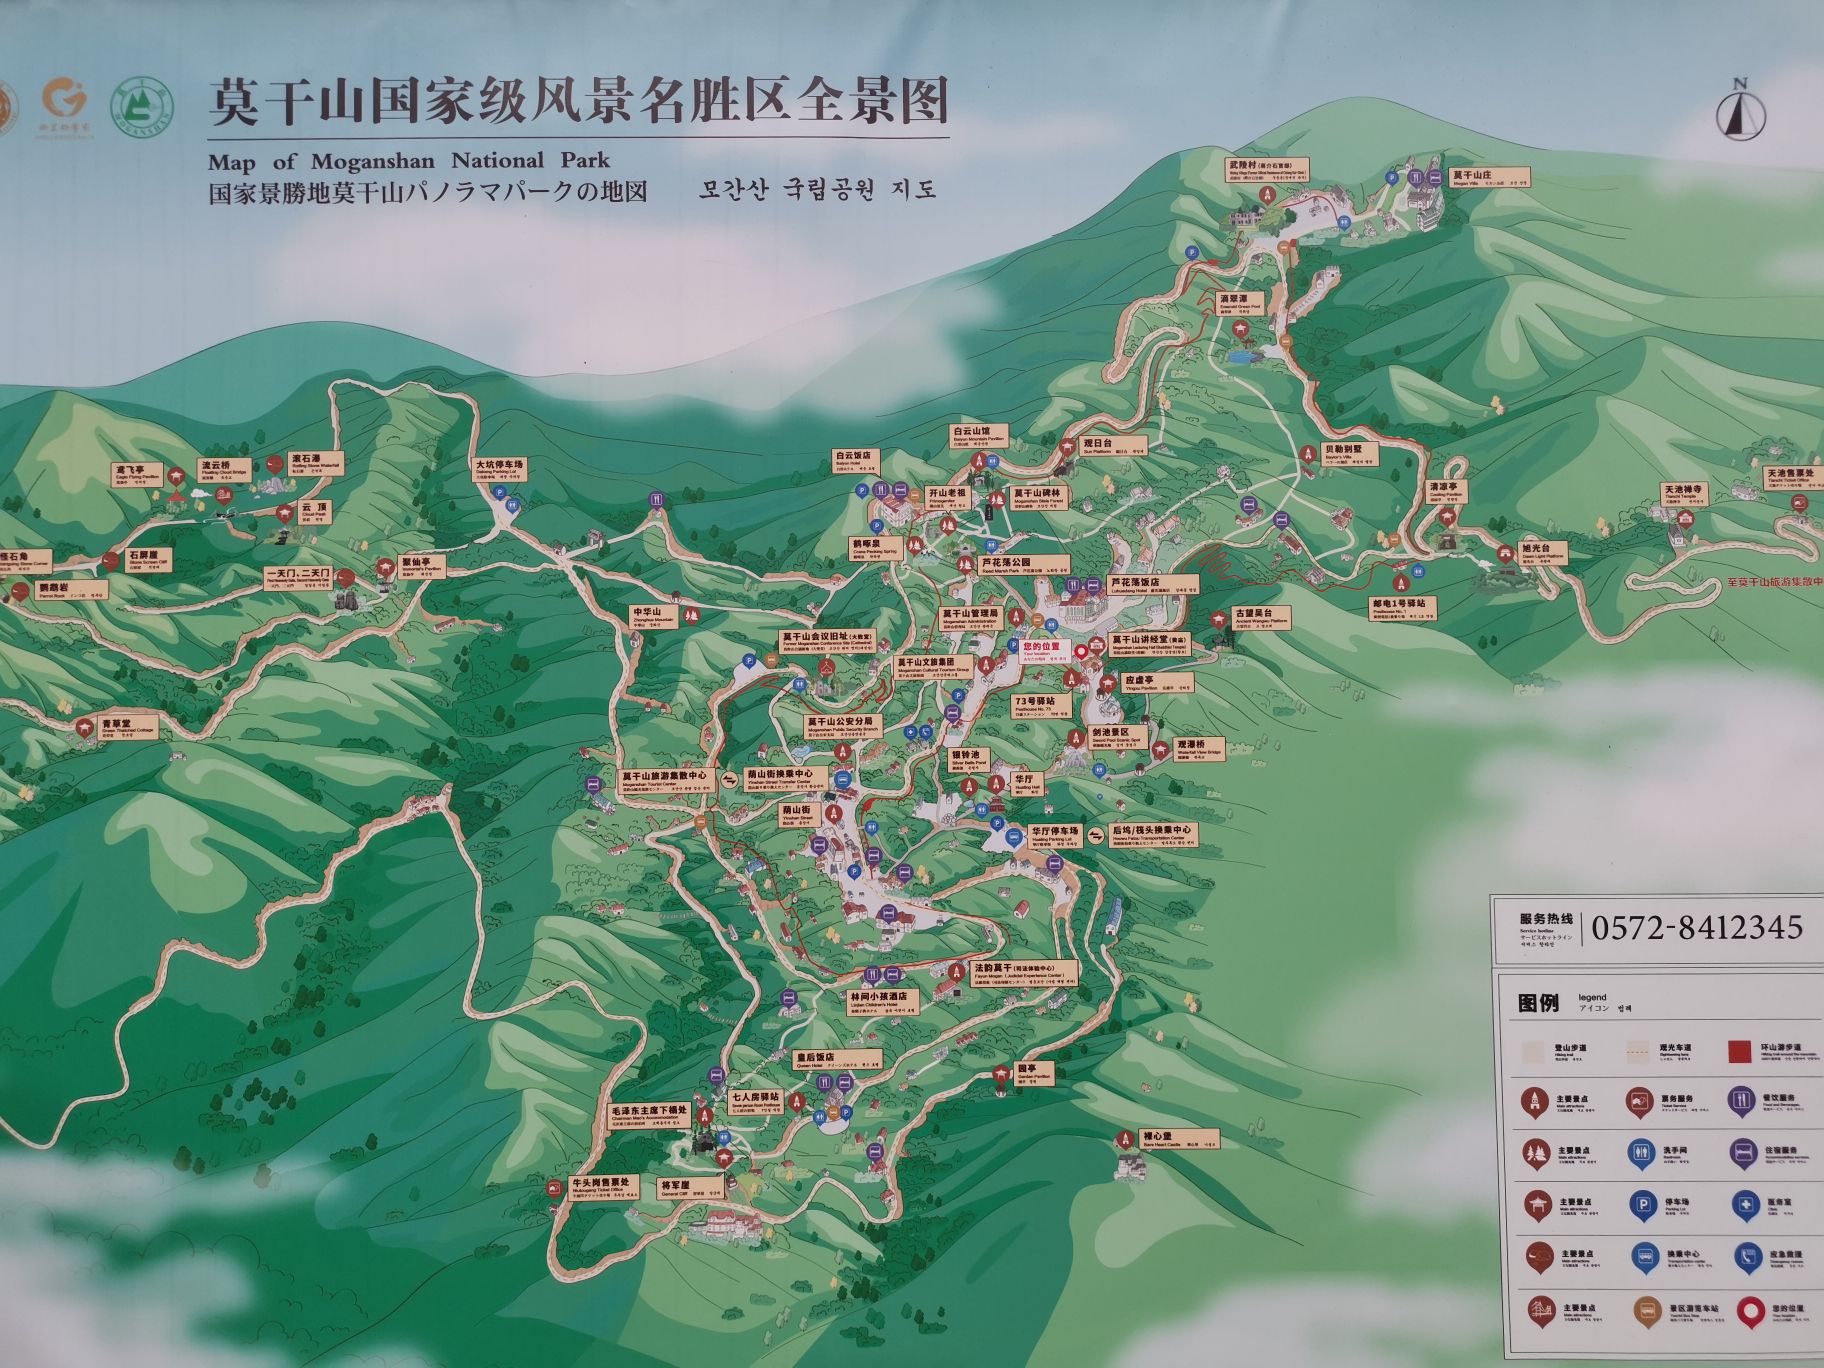 Mogan Mountain Tourist Map